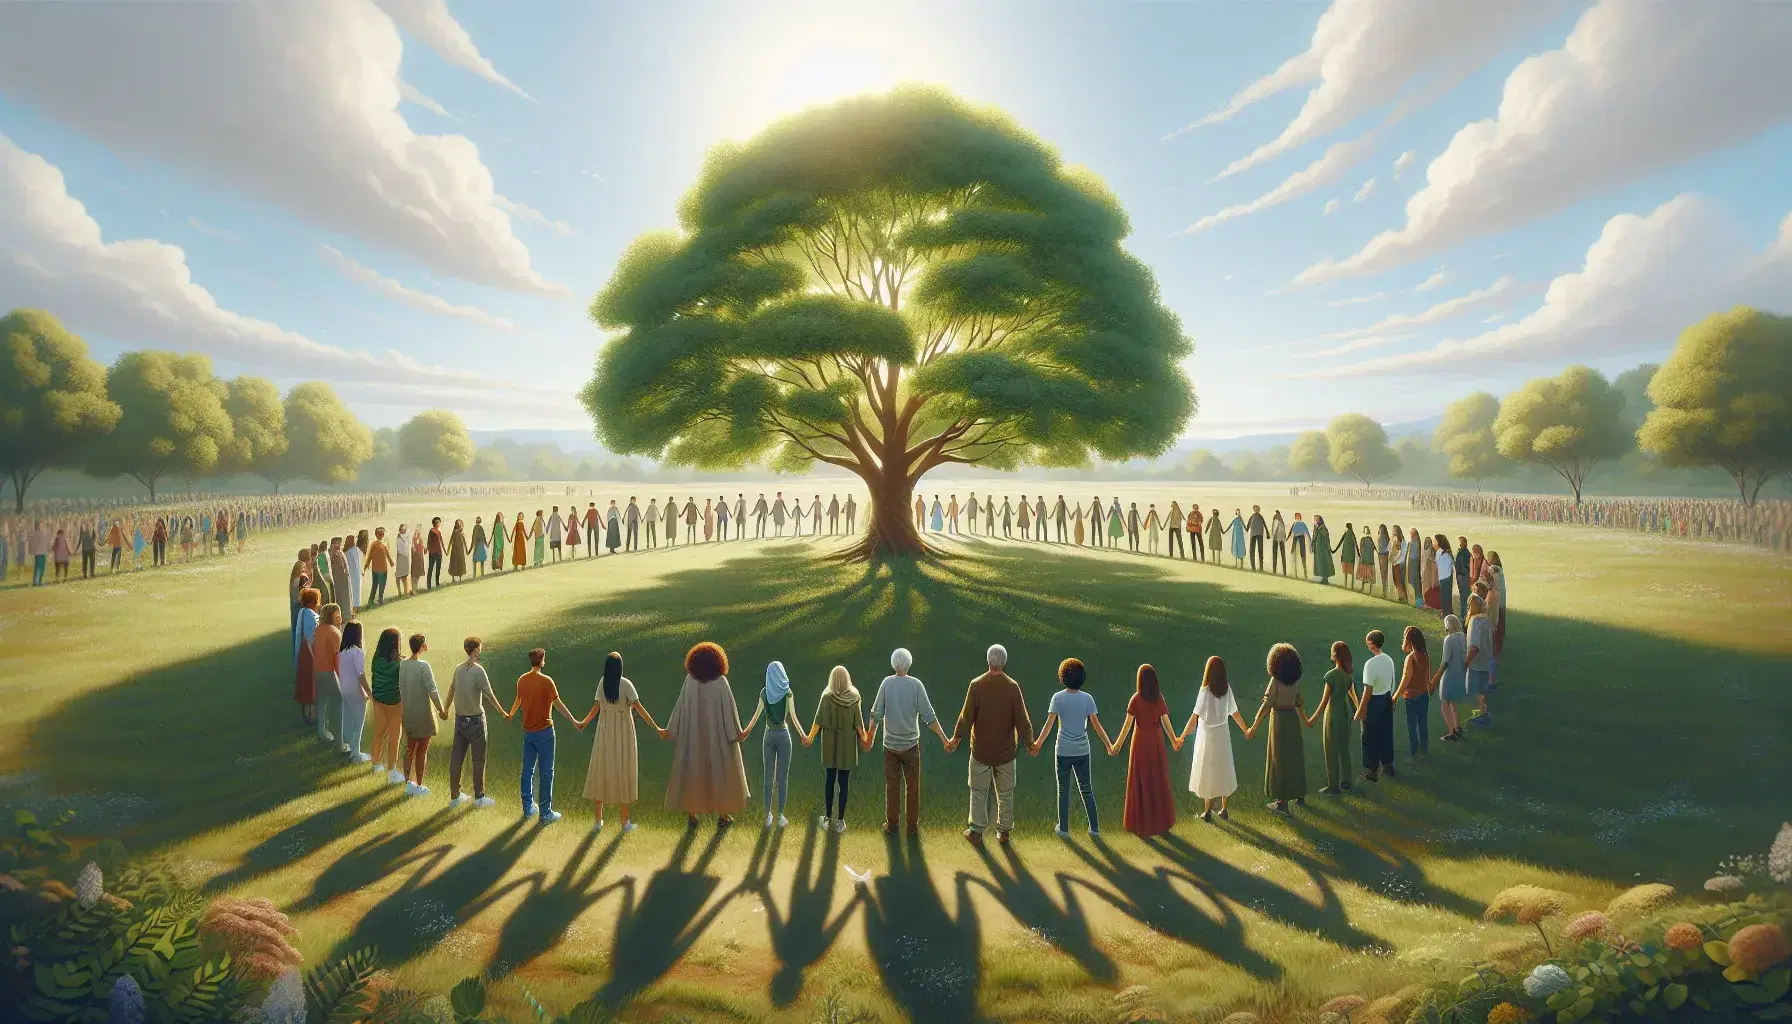 Círculo de personas diversas tomadas de las manos alrededor de un árbol frondoso en un campo verde bajo un cielo azul con nubes dispersas.